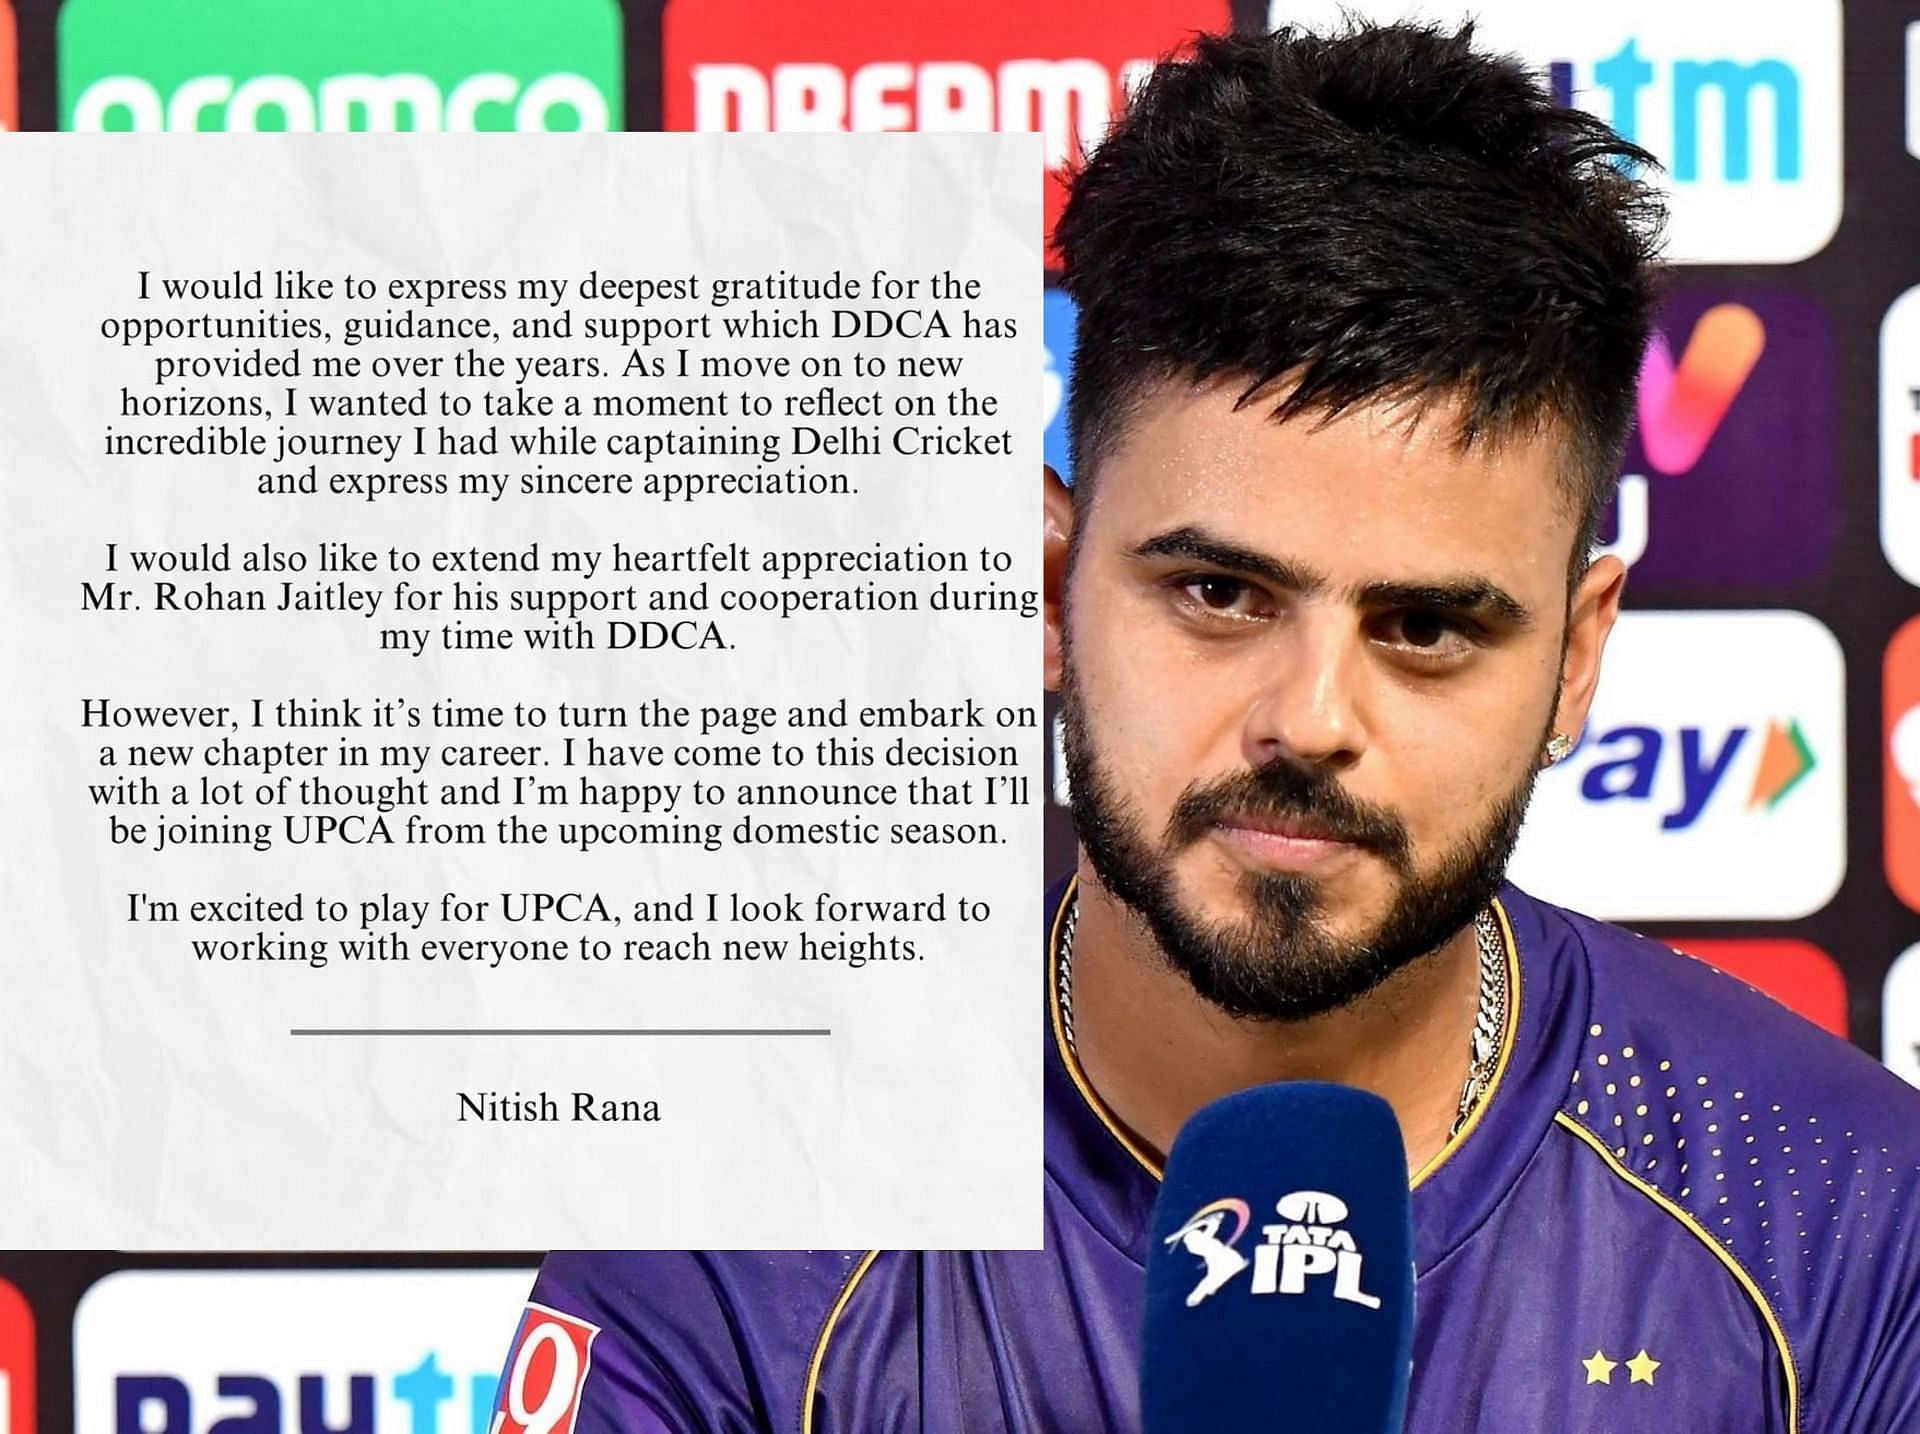 नितीश राणा ने आगामी सीजन में नई टीम से जुड़ने का फैसला किया है